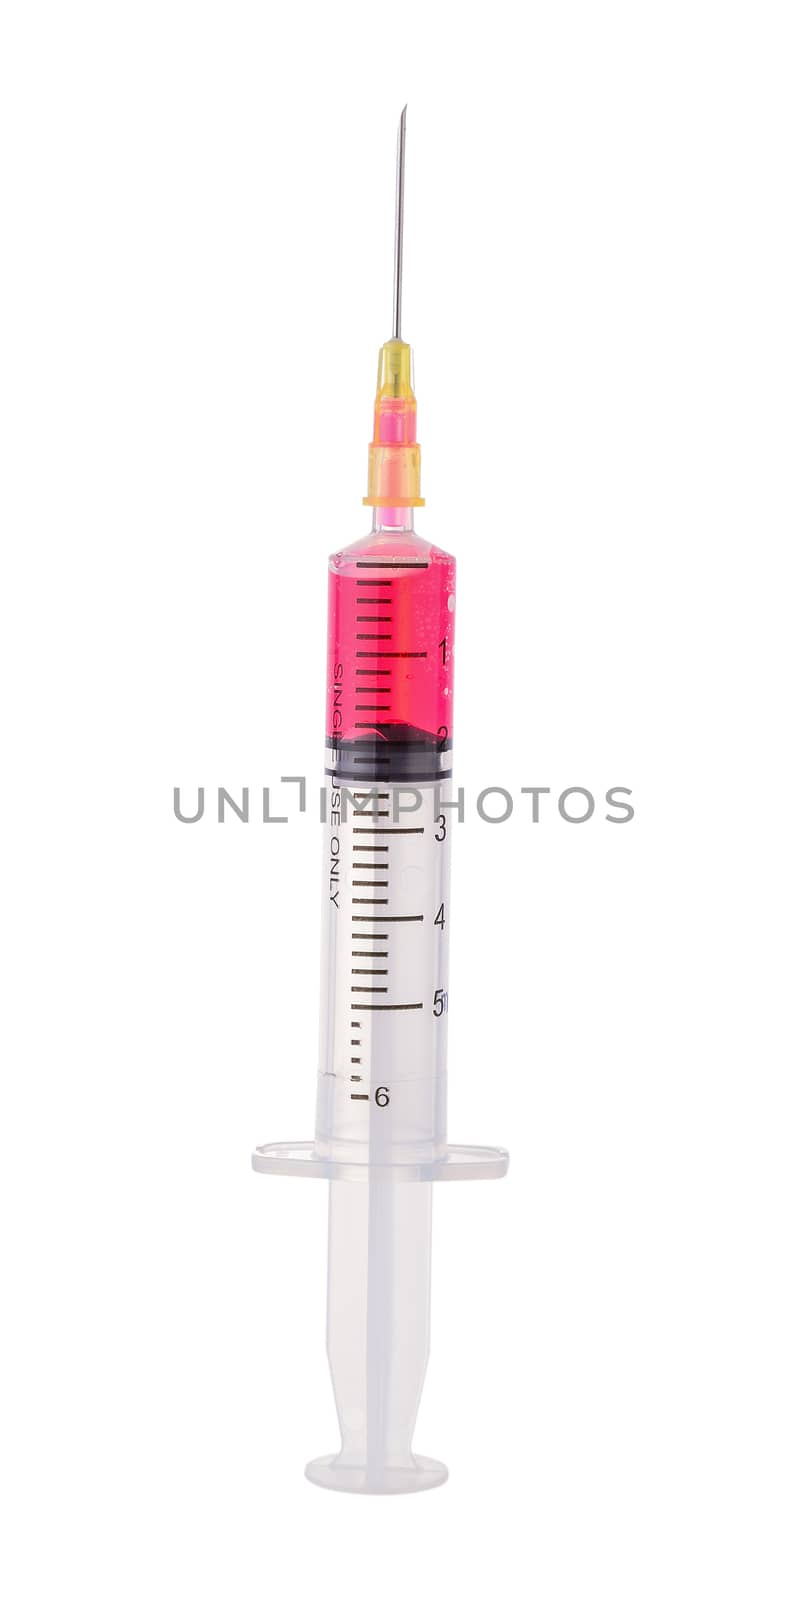  plastic syringe isolated on white background